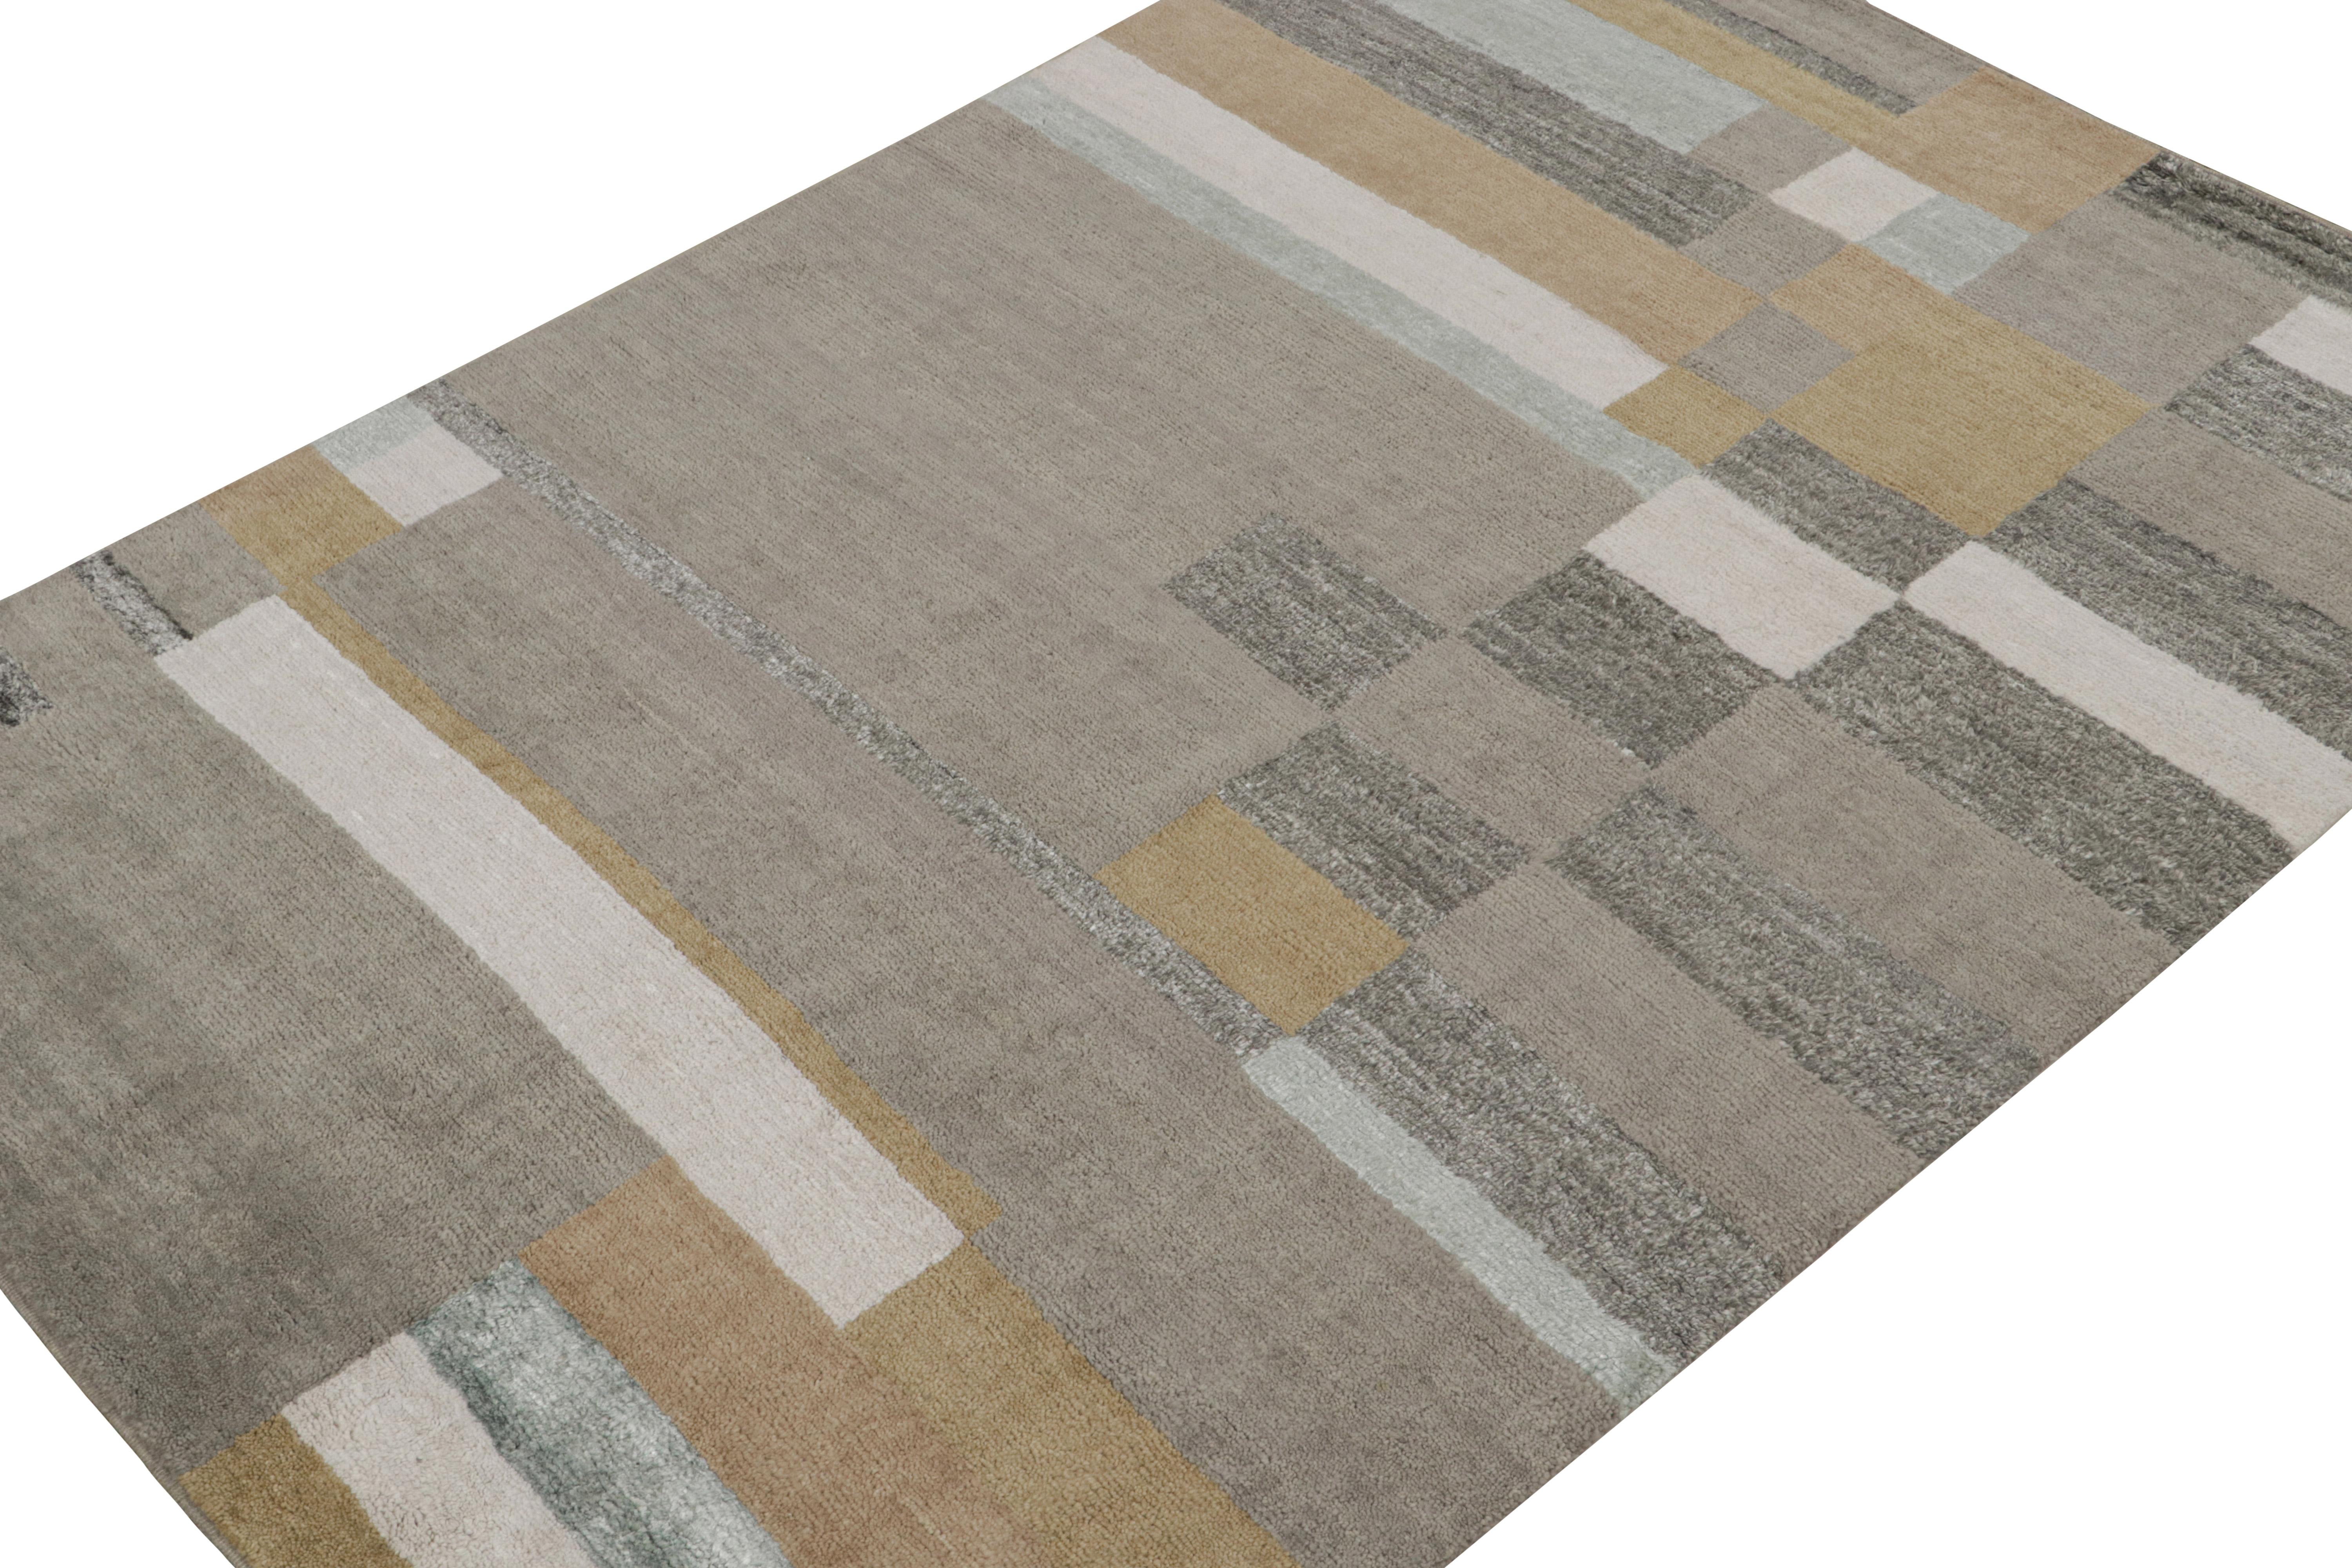 Dieser 6x9 große moderne Teppich aus Wolle und Seide ist handgeknüpft und repräsentiert die skandinavische Teppichkollektion von Rug & Kilim. Diese Kollektion ist eine Neuinterpretation der Rollkhans- und Rya-Teppiche im schwedischen Deco-Stil und